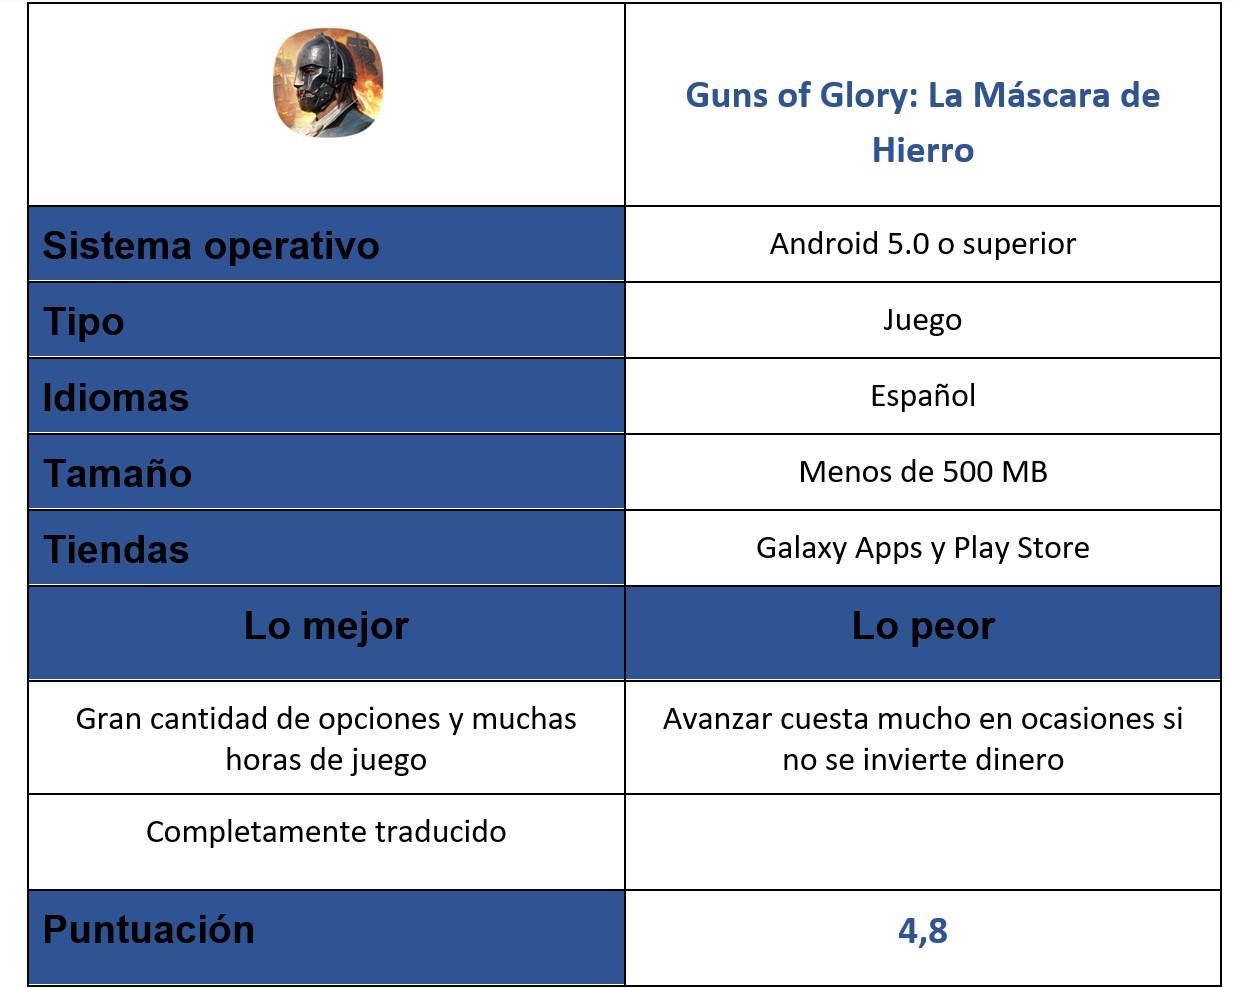 Tabla del juego Guns of Glory: La Máscara de Hierro